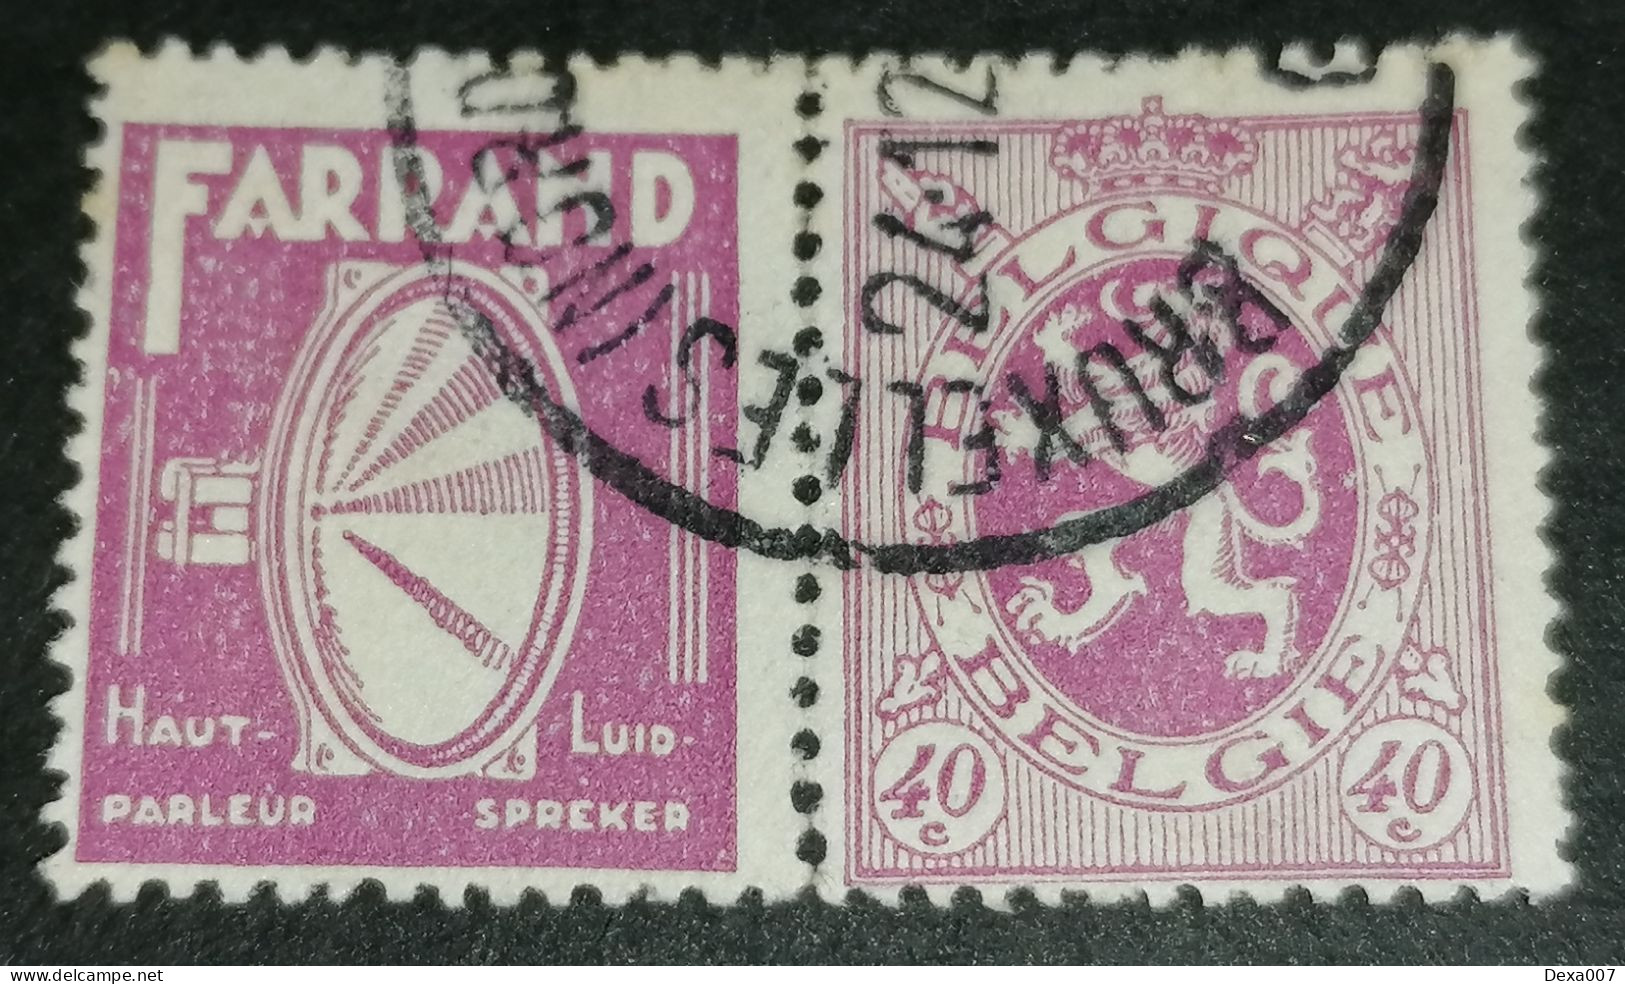 Belgium Advertising Stamp Farrand Nr.2 - Usati